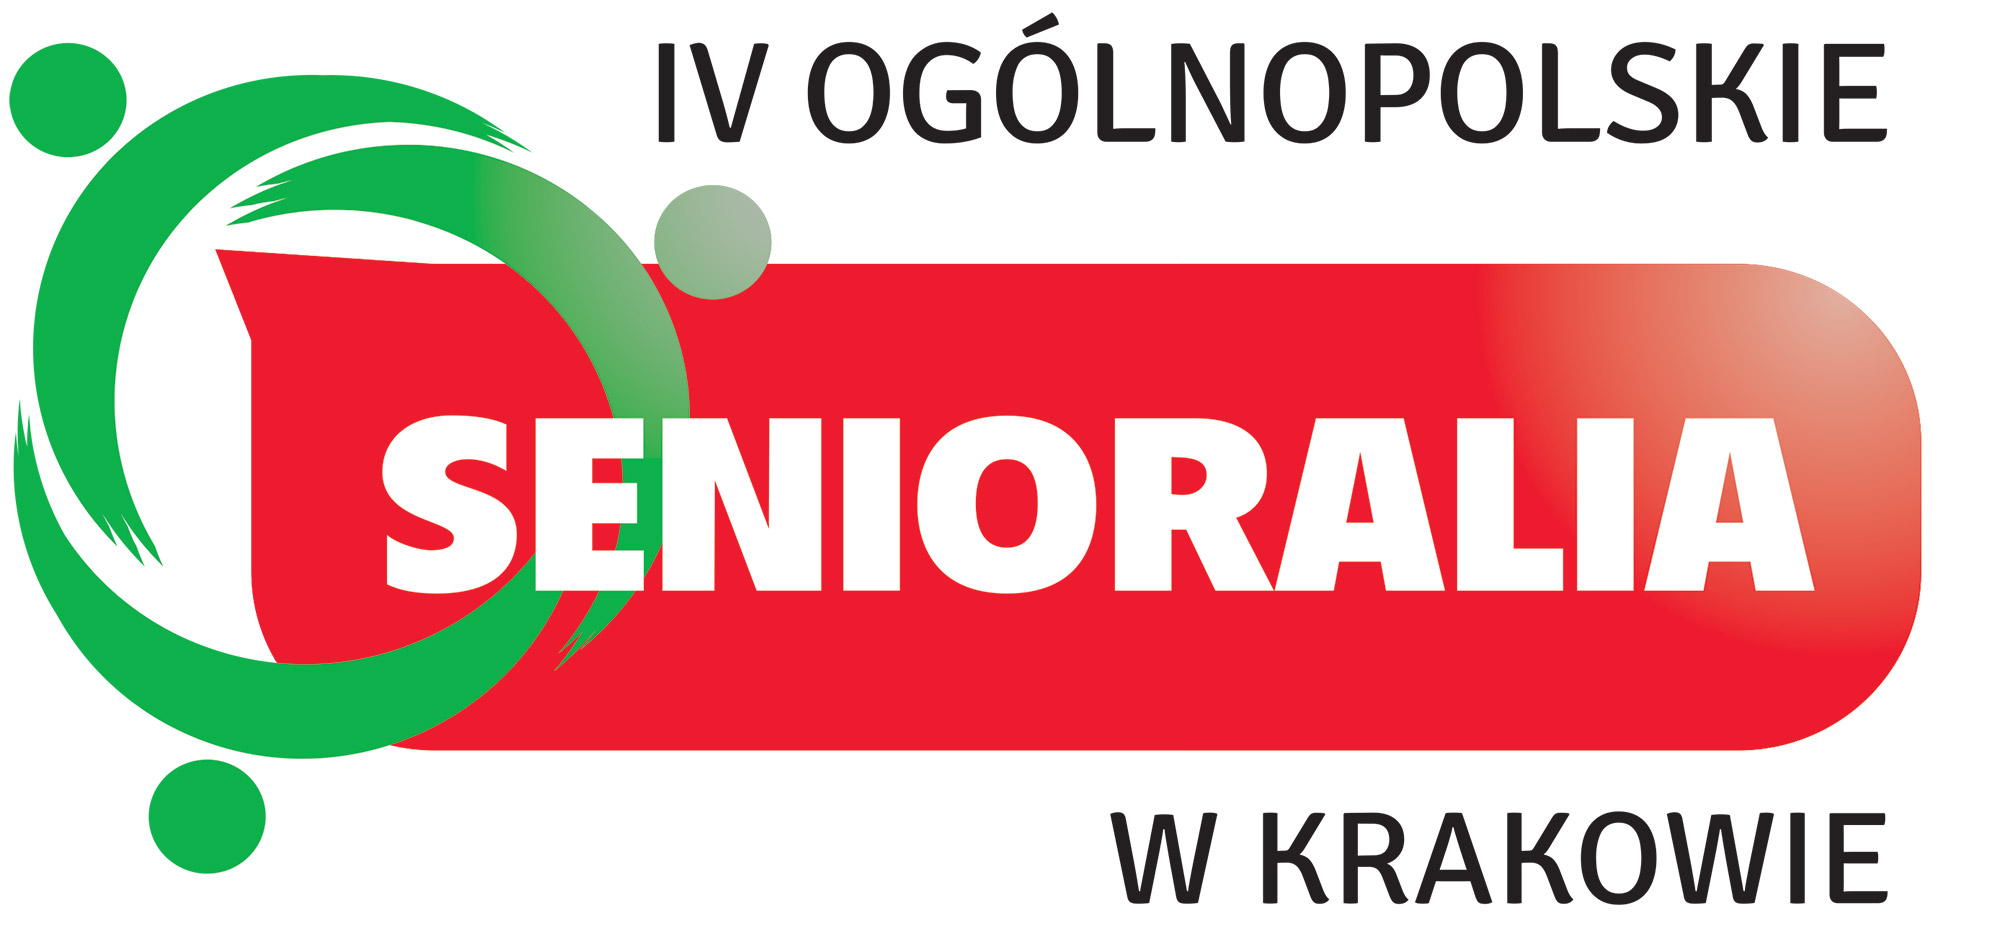 IV_ogolnopolskie-senioralia